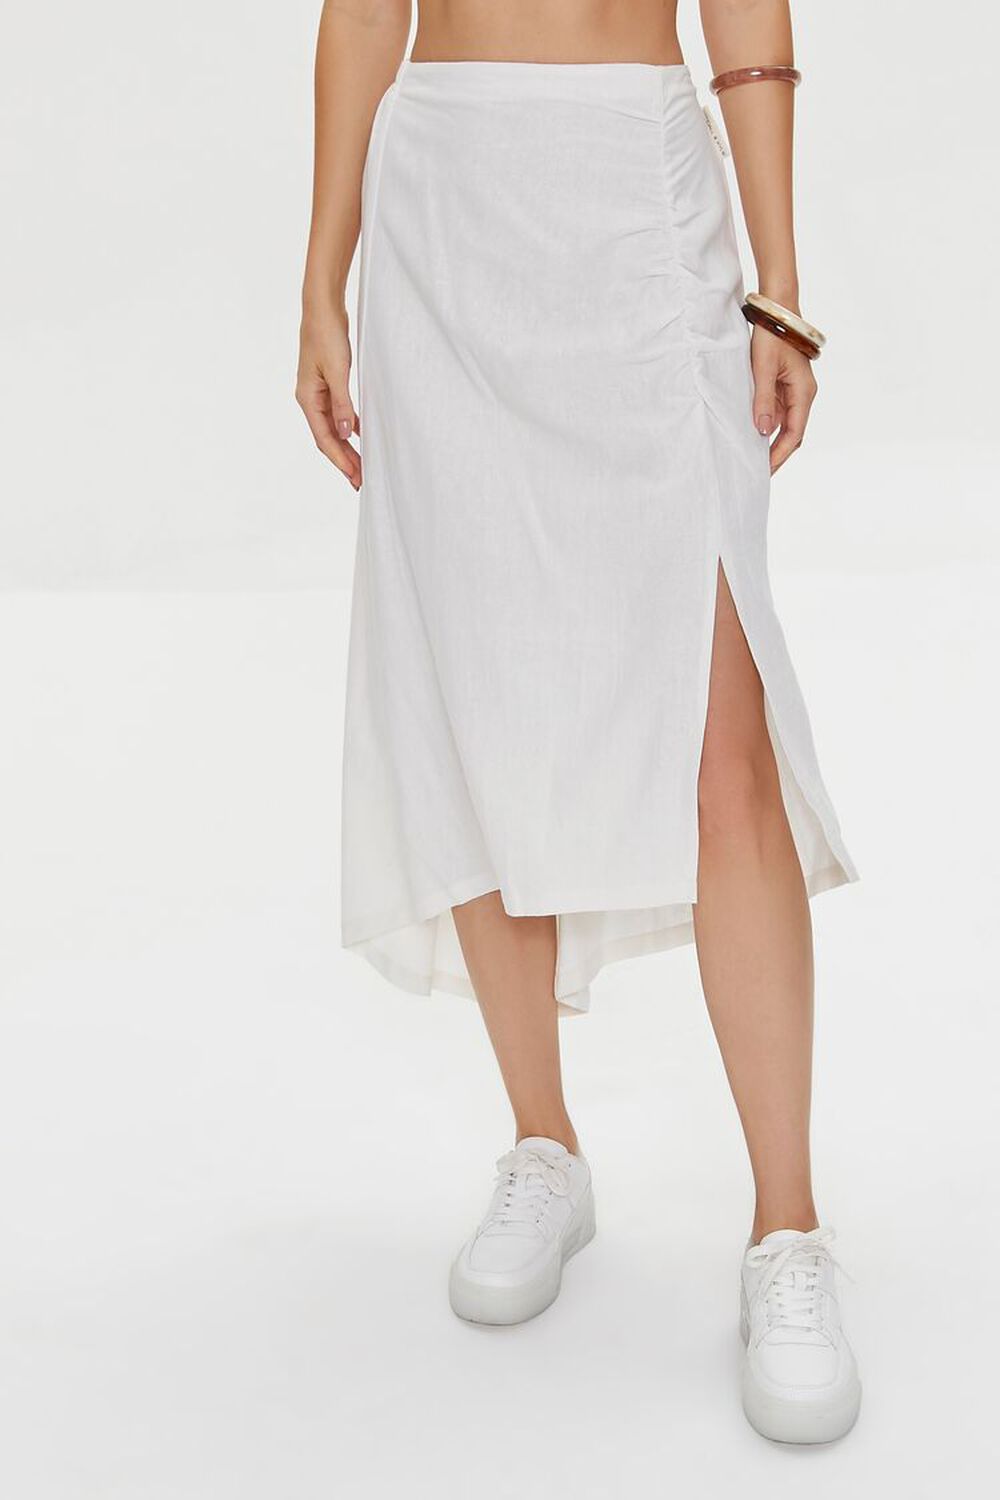 WHITE Kendall + Kylie Linen-Blend Skirt, image 2